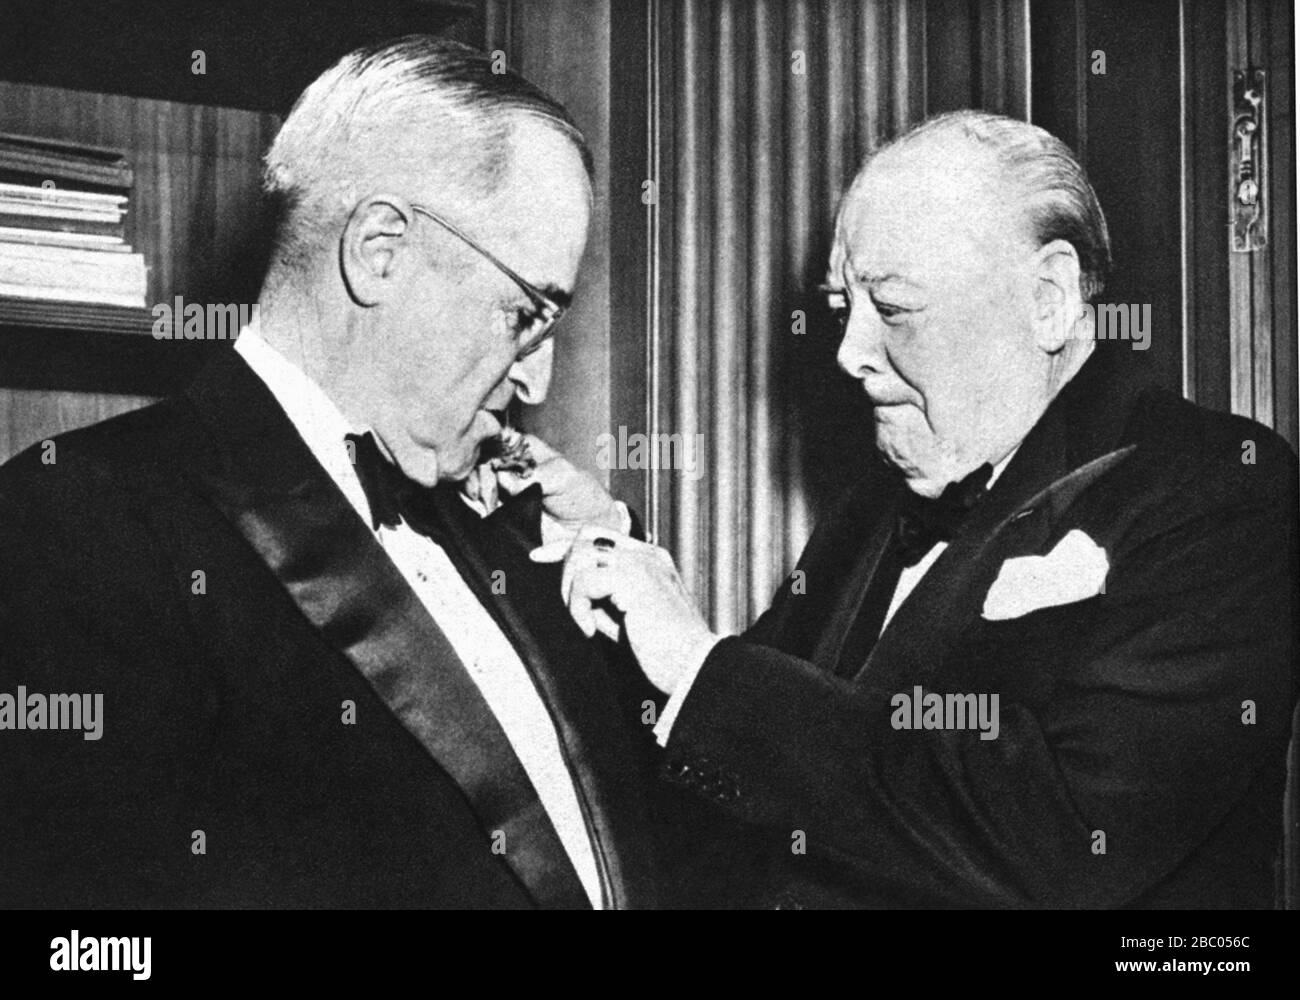 Churchill clavando un agujero en la chaqueta de cena del presidente Truman en una cena para el presidente de la embajada británica. Washington, 8 de enero de 1953 Foto de stock